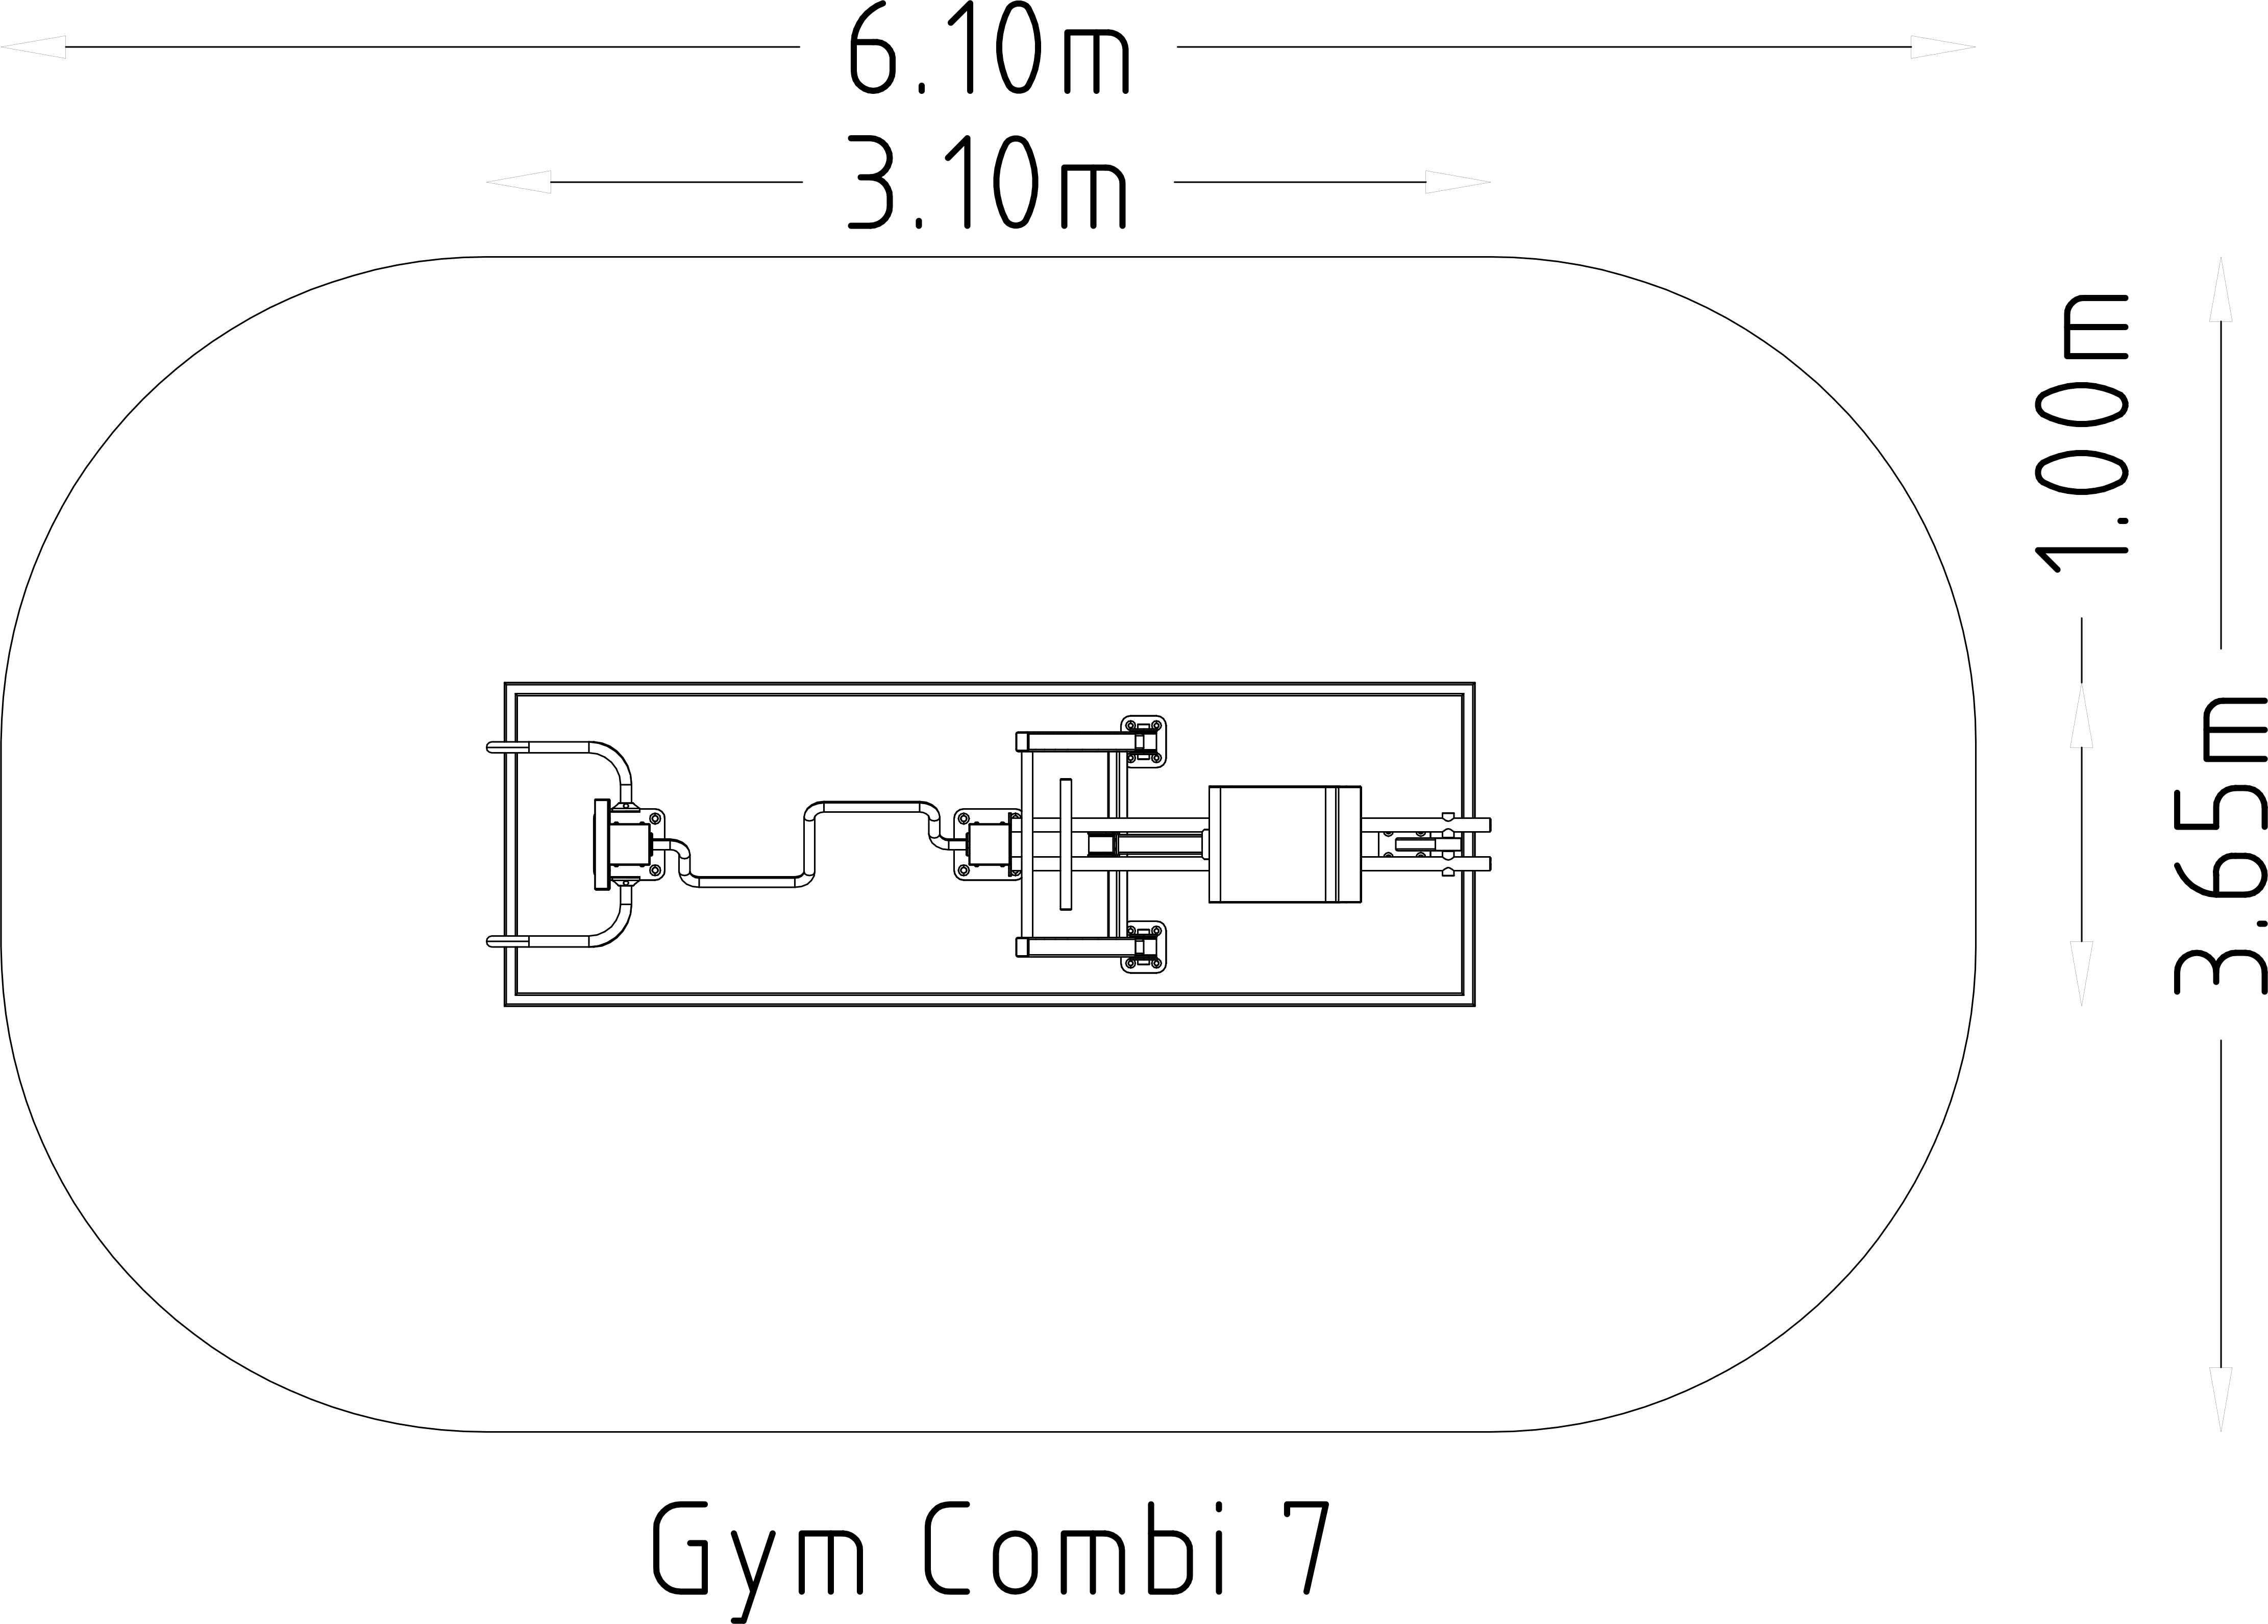 Denfit Gym Combi 7